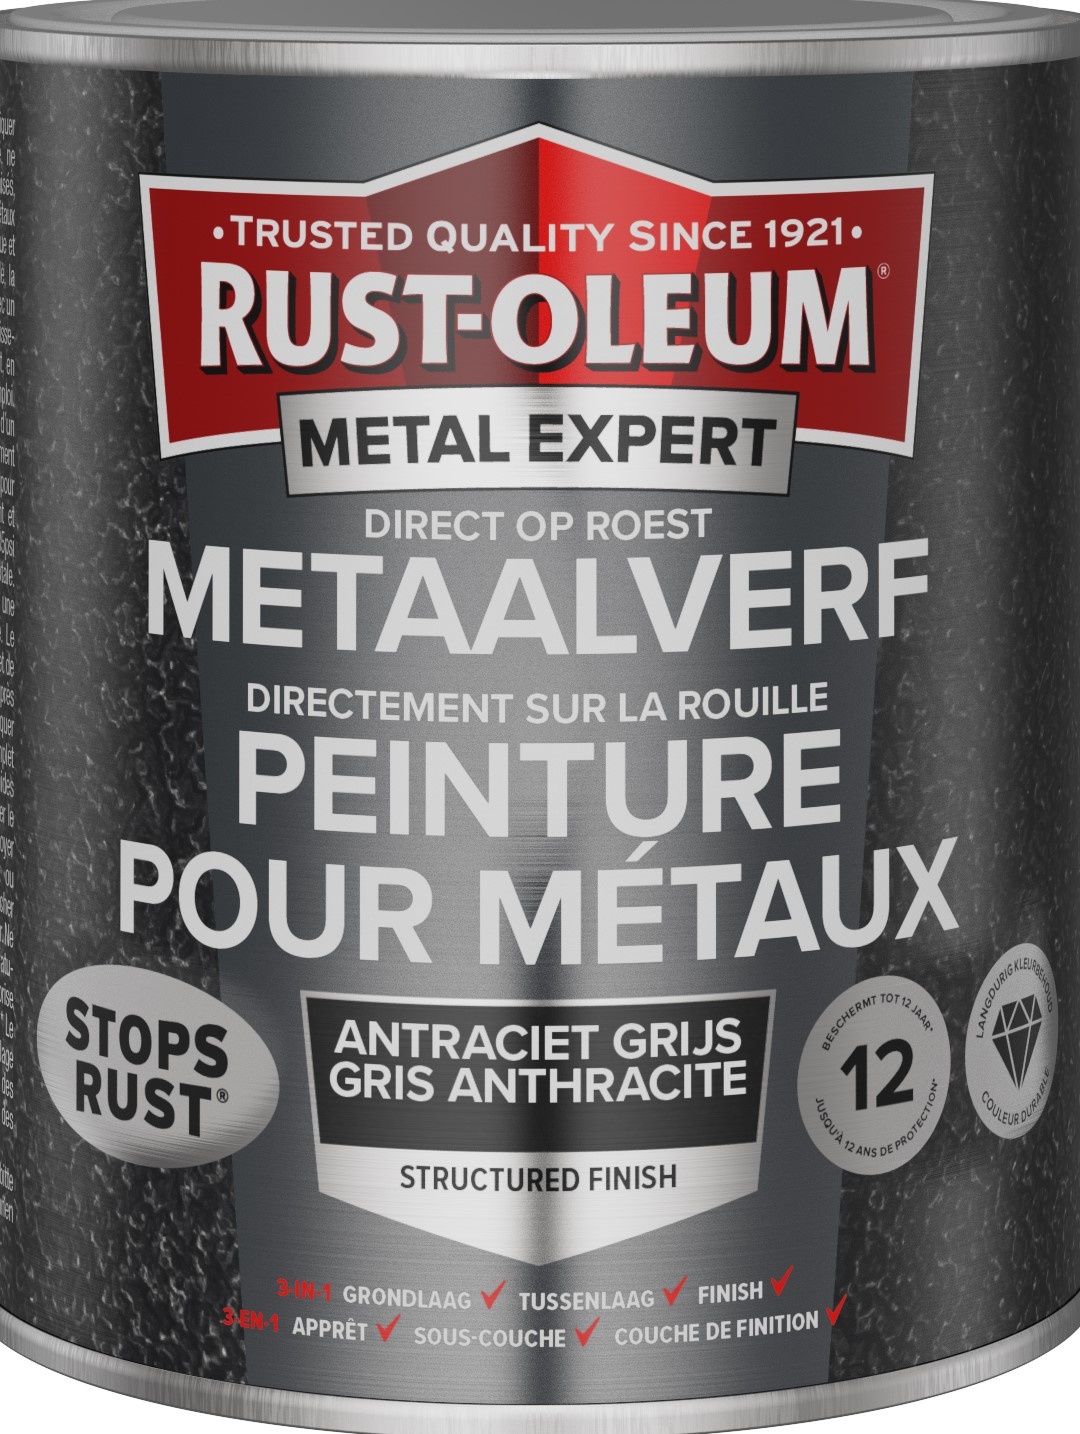 Rust-oleum Metalexpert Direct Op Roest Metaalverf - Structuur - Antraciet 250 Ml